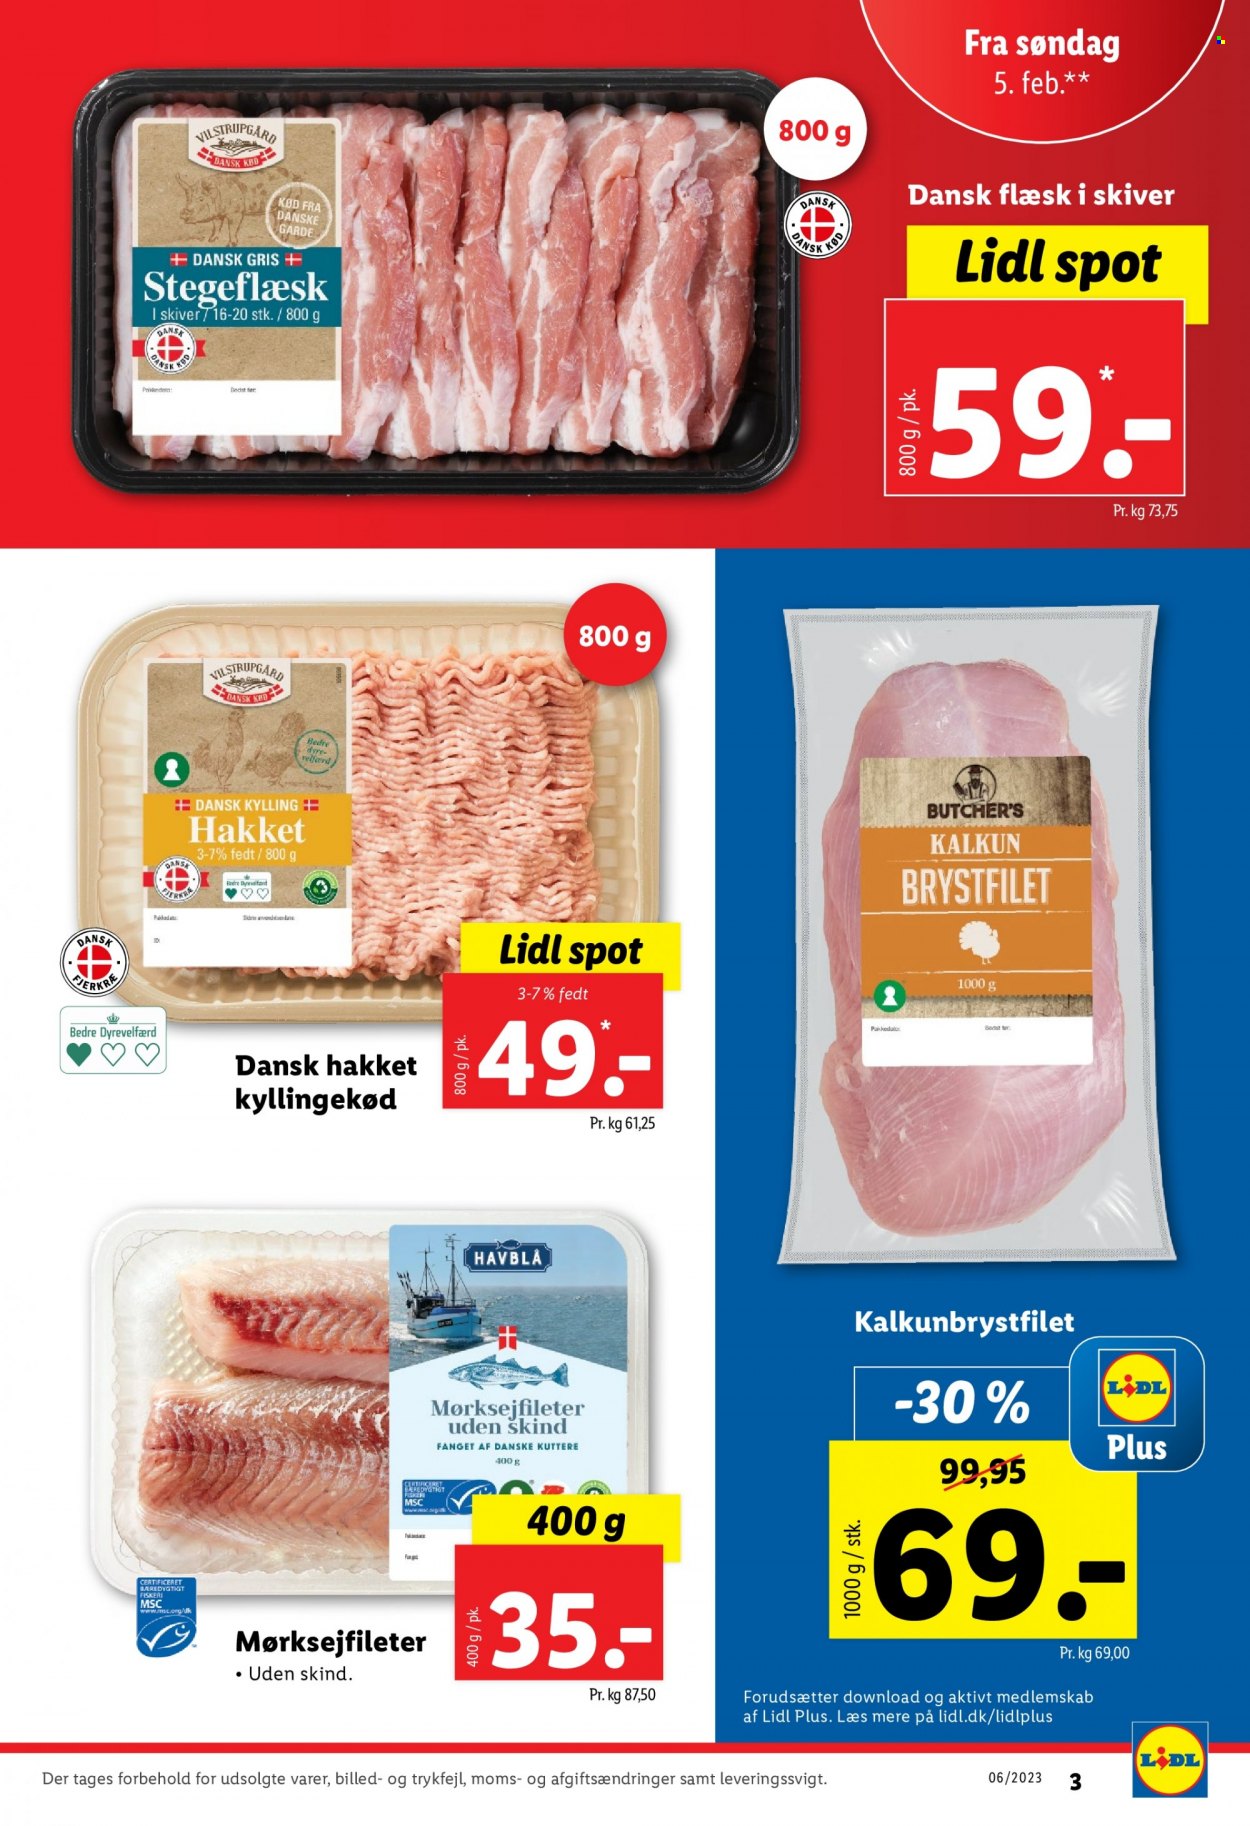 thumbnail - Lidl tilbud  - 5.2.2023 - 11.2.2023 - tilbudsprodukter - stegeflæsk, dansk gris, grisekød, hakket kylling, kalkun, kylling. Side 3.